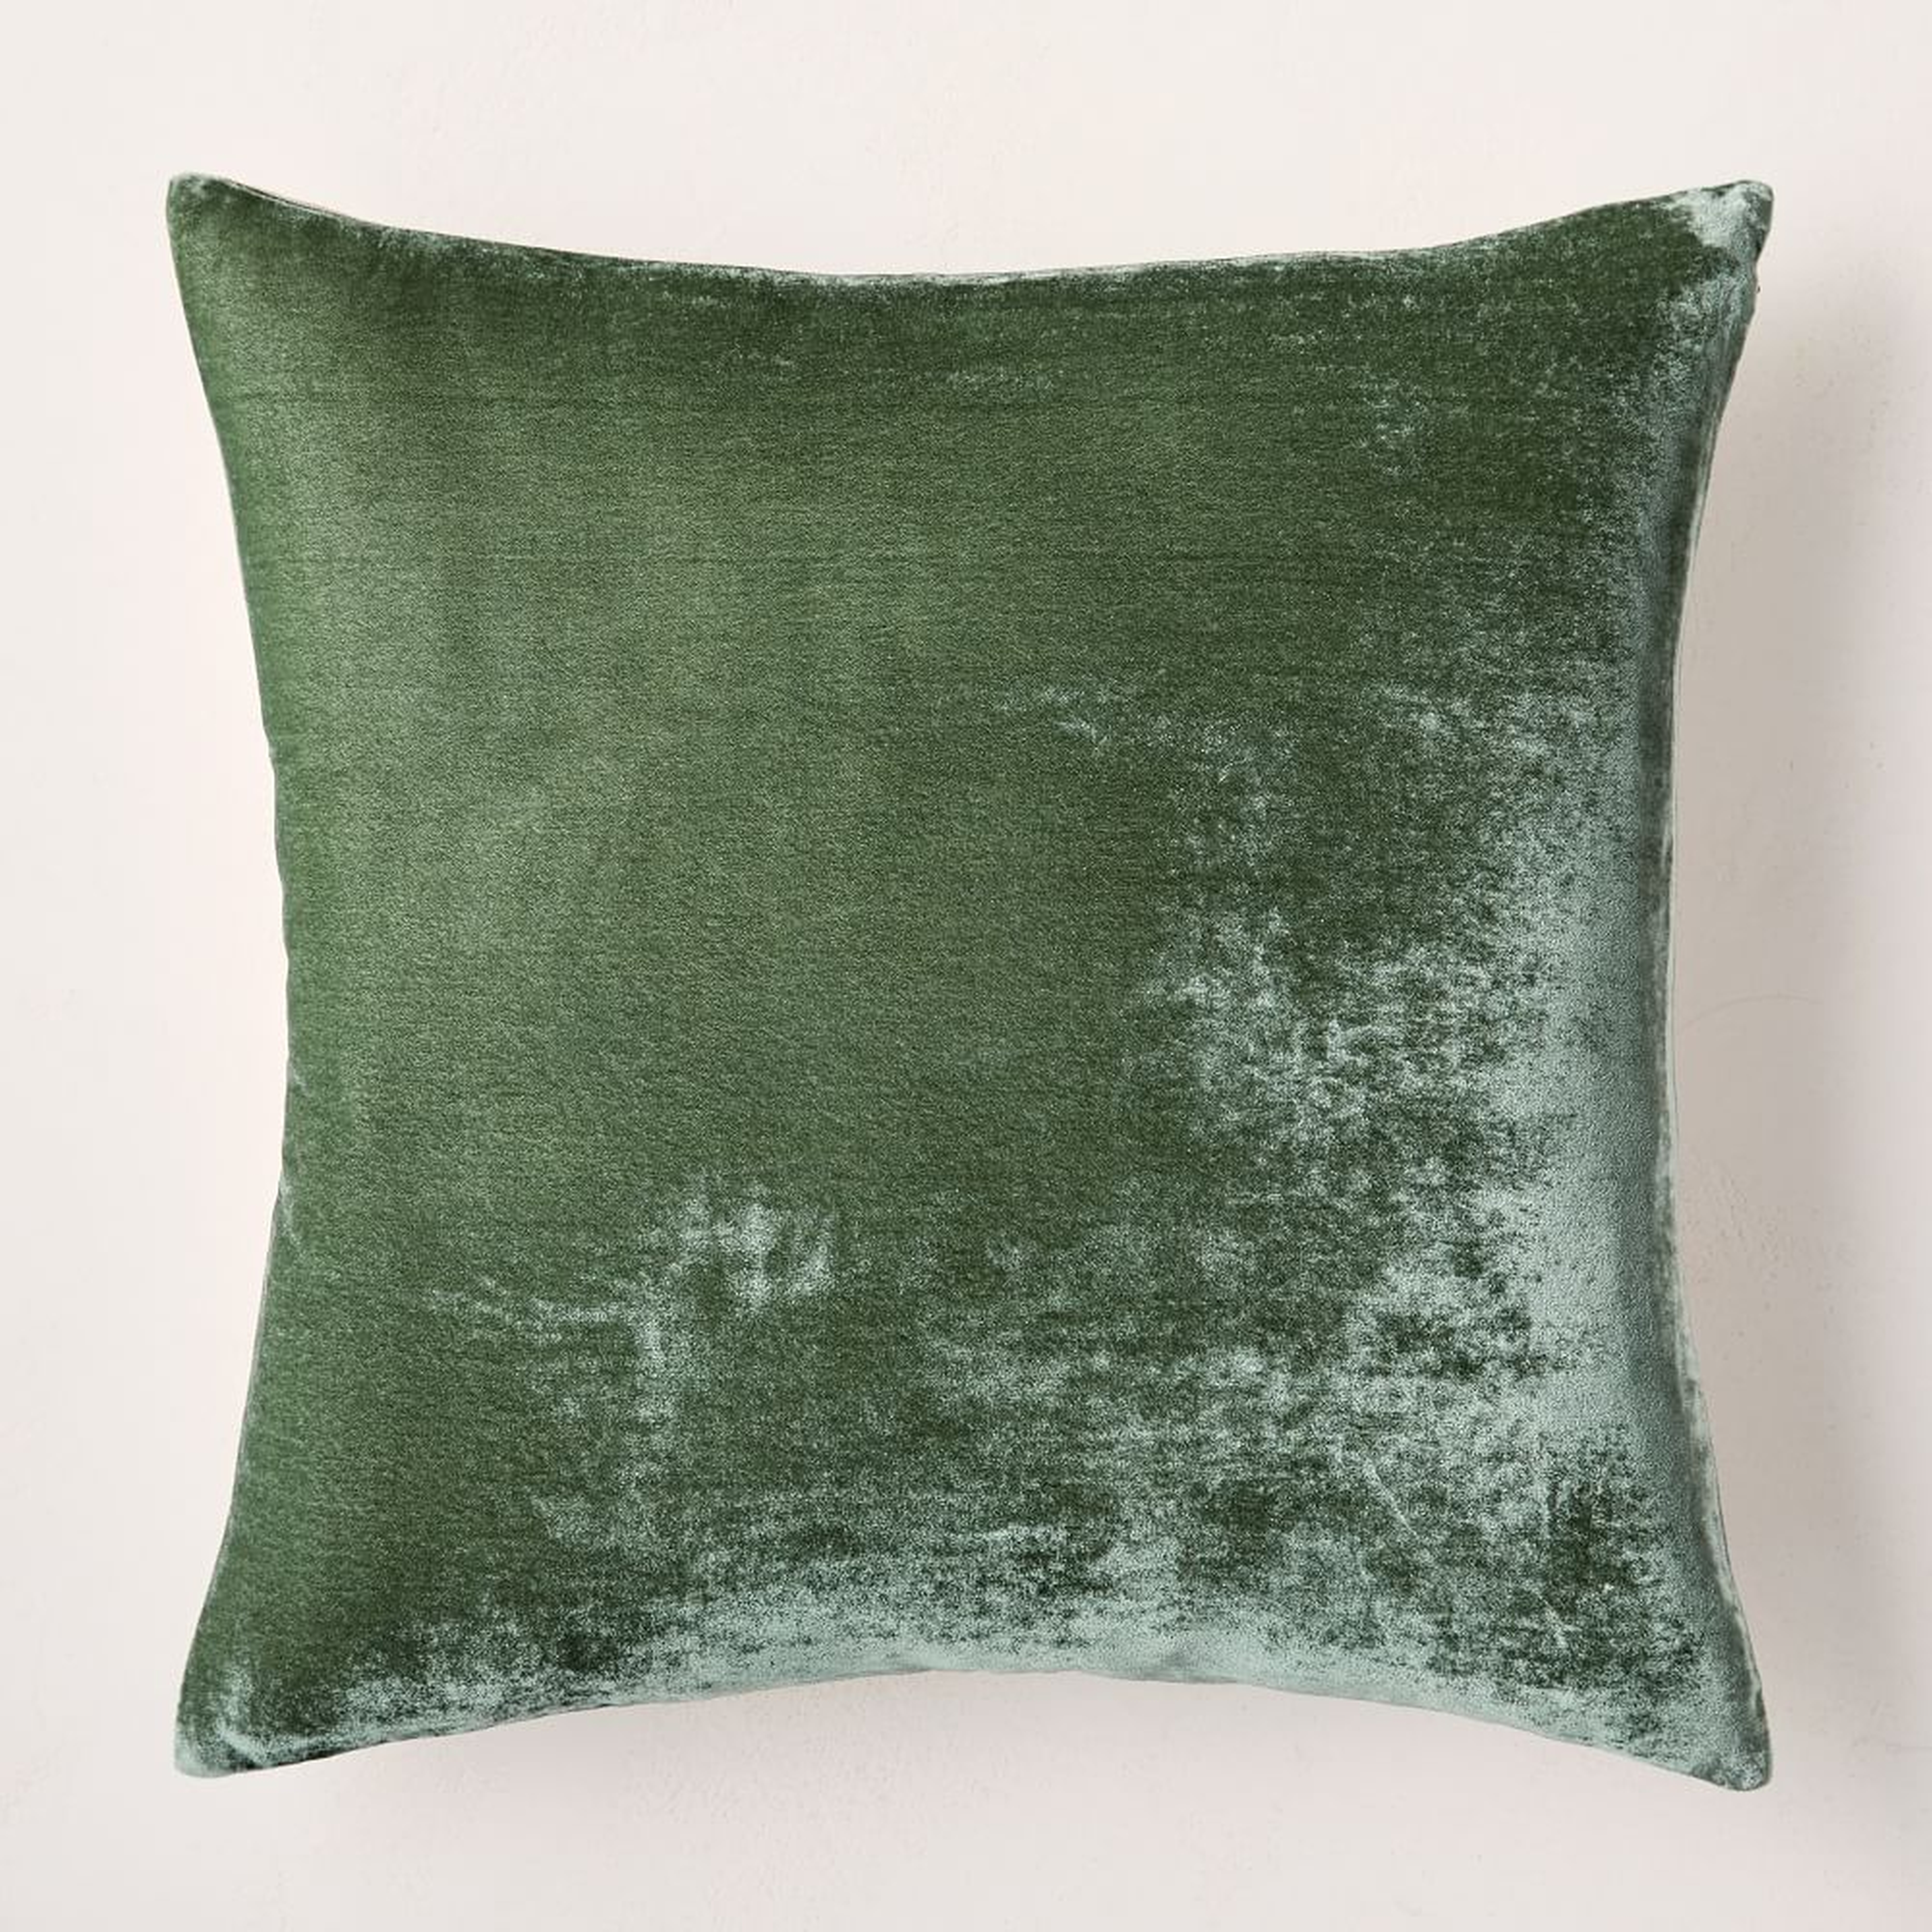 Lush Velvet Pillow Cover, 20"x20", Eucalyptus - West Elm